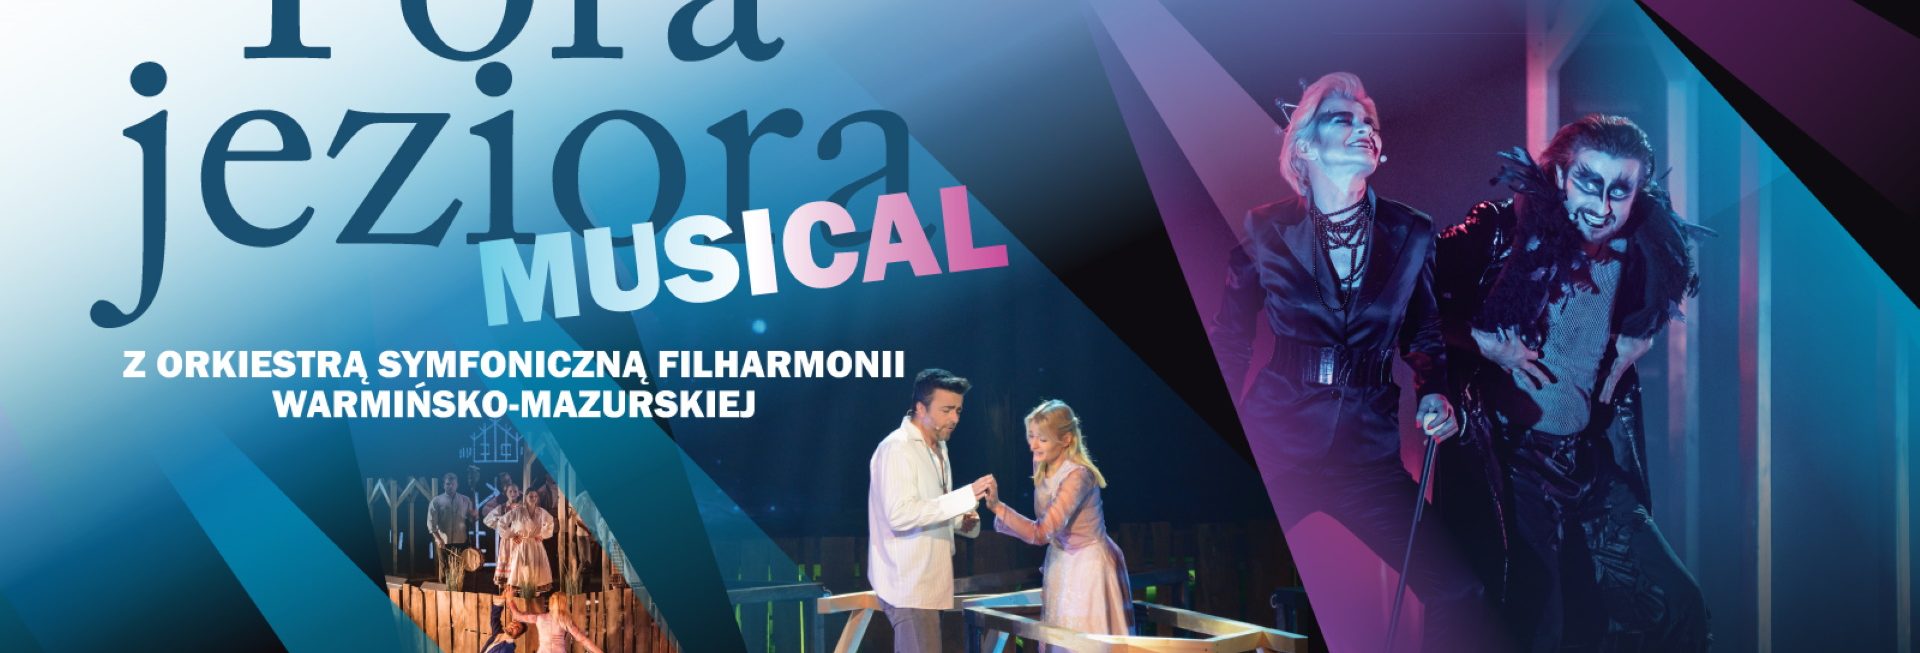 Plakat graficzny zapraszający na Musical „Pora jeziora” z Orkiestrą Symfoniczną Filharmonii Warmińsko-Mazurskiej w Olsztynie.